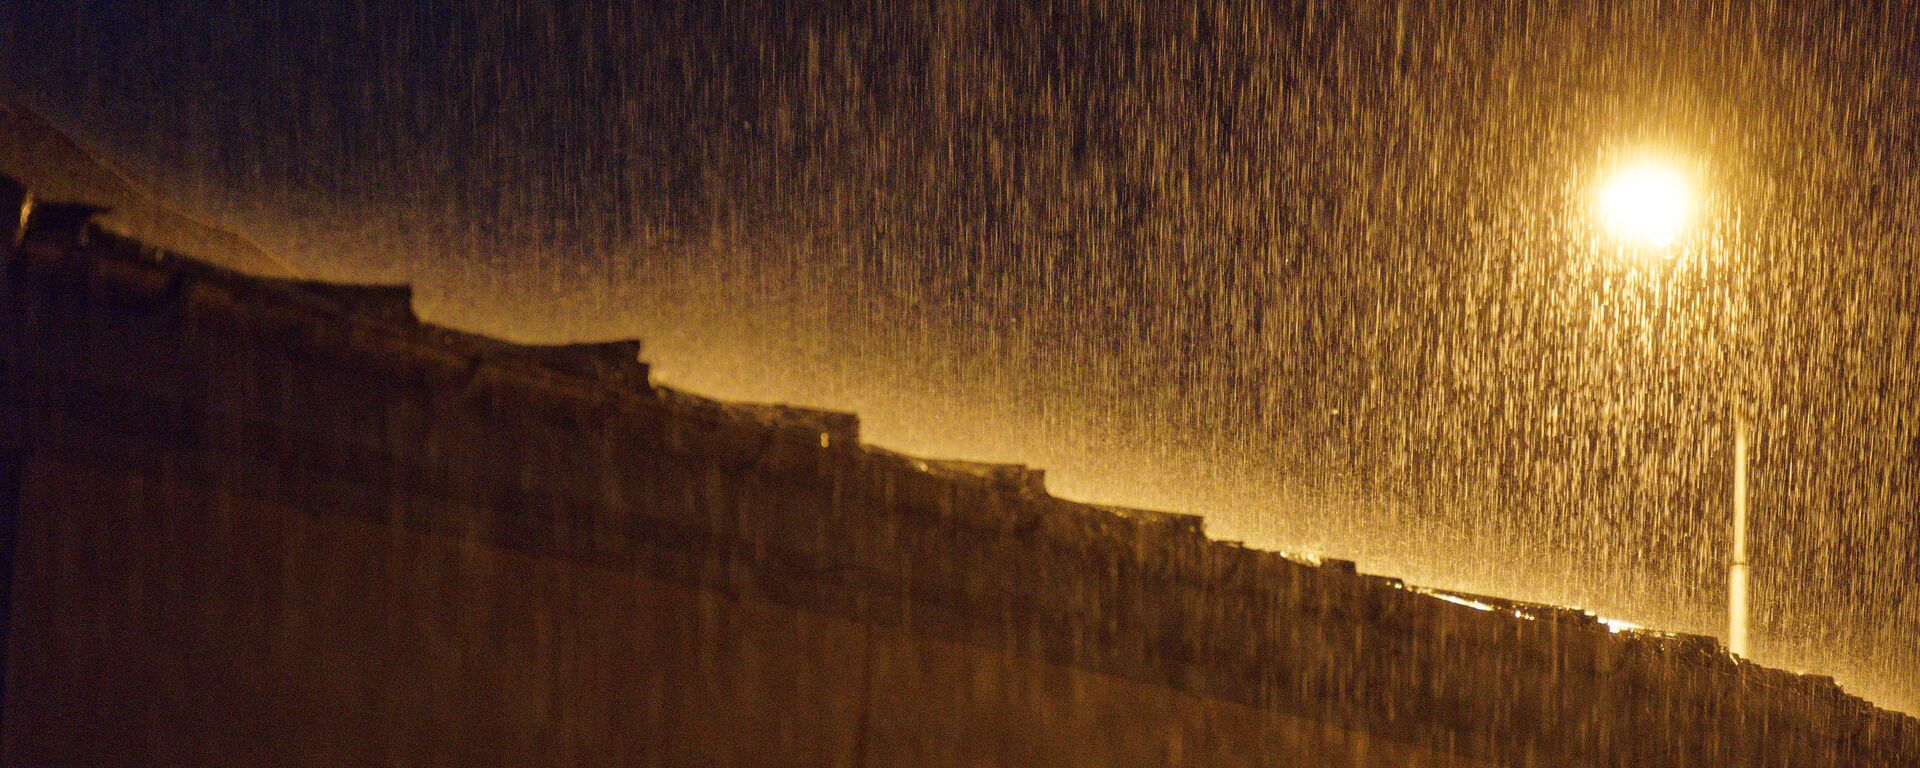 Сильный дождь. Струи воды в свете уличного фонаря - Sputnik Грузия, 1920, 04.07.2021